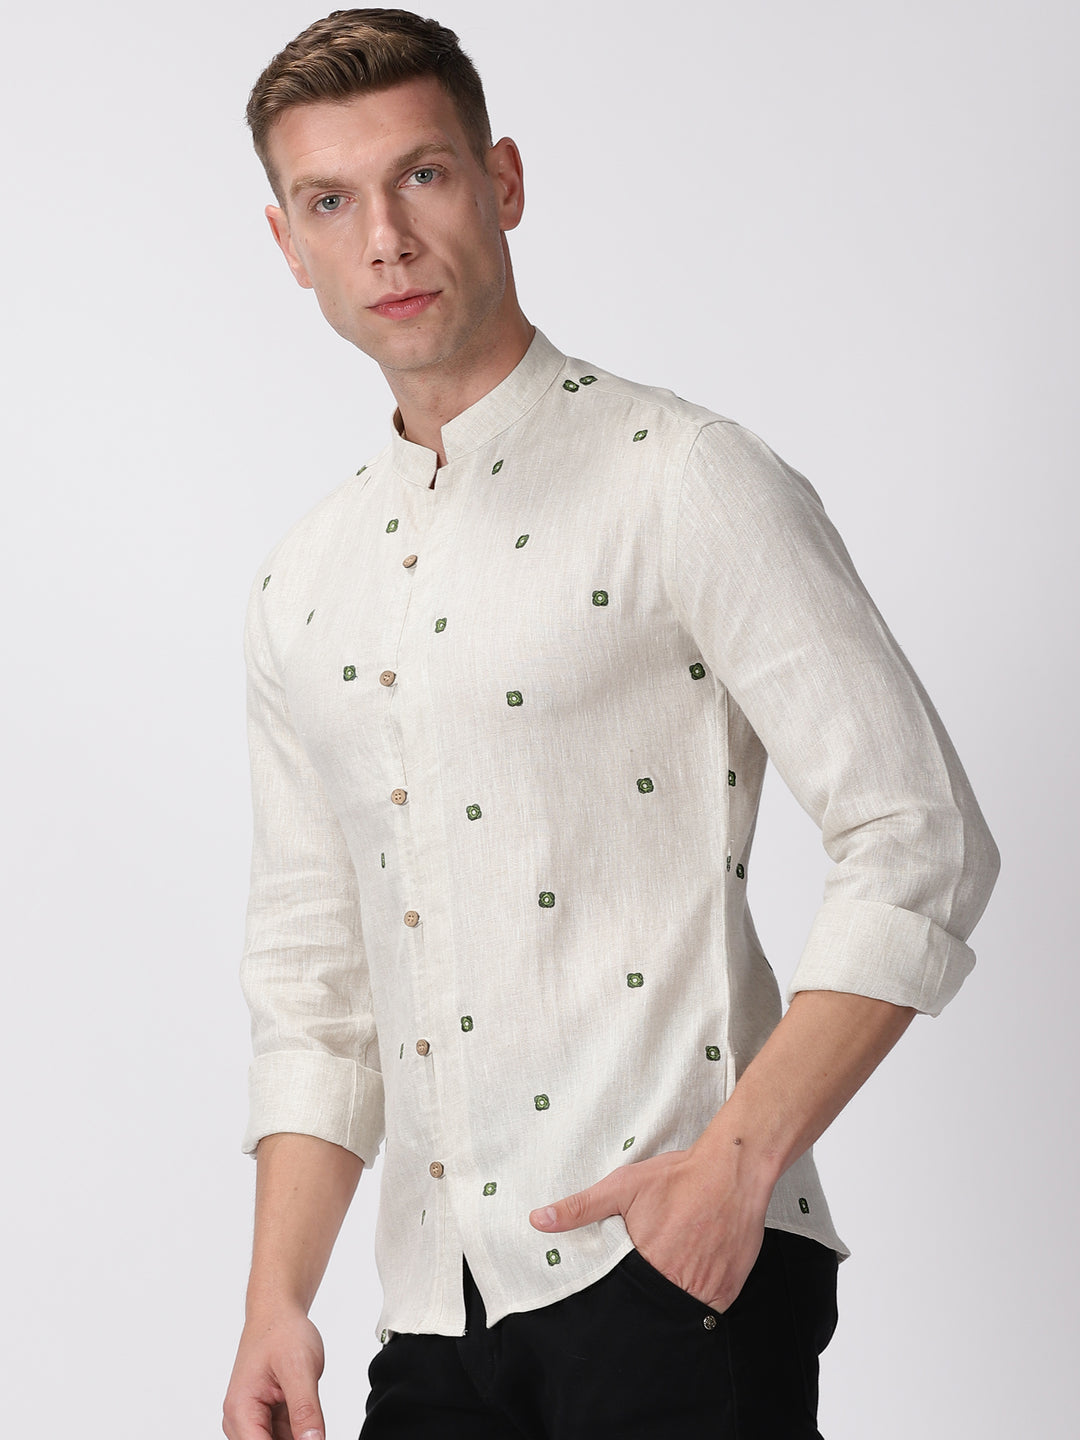 Noah - Pure Linen Embroidered Full Sleeve Shirt - Ecru